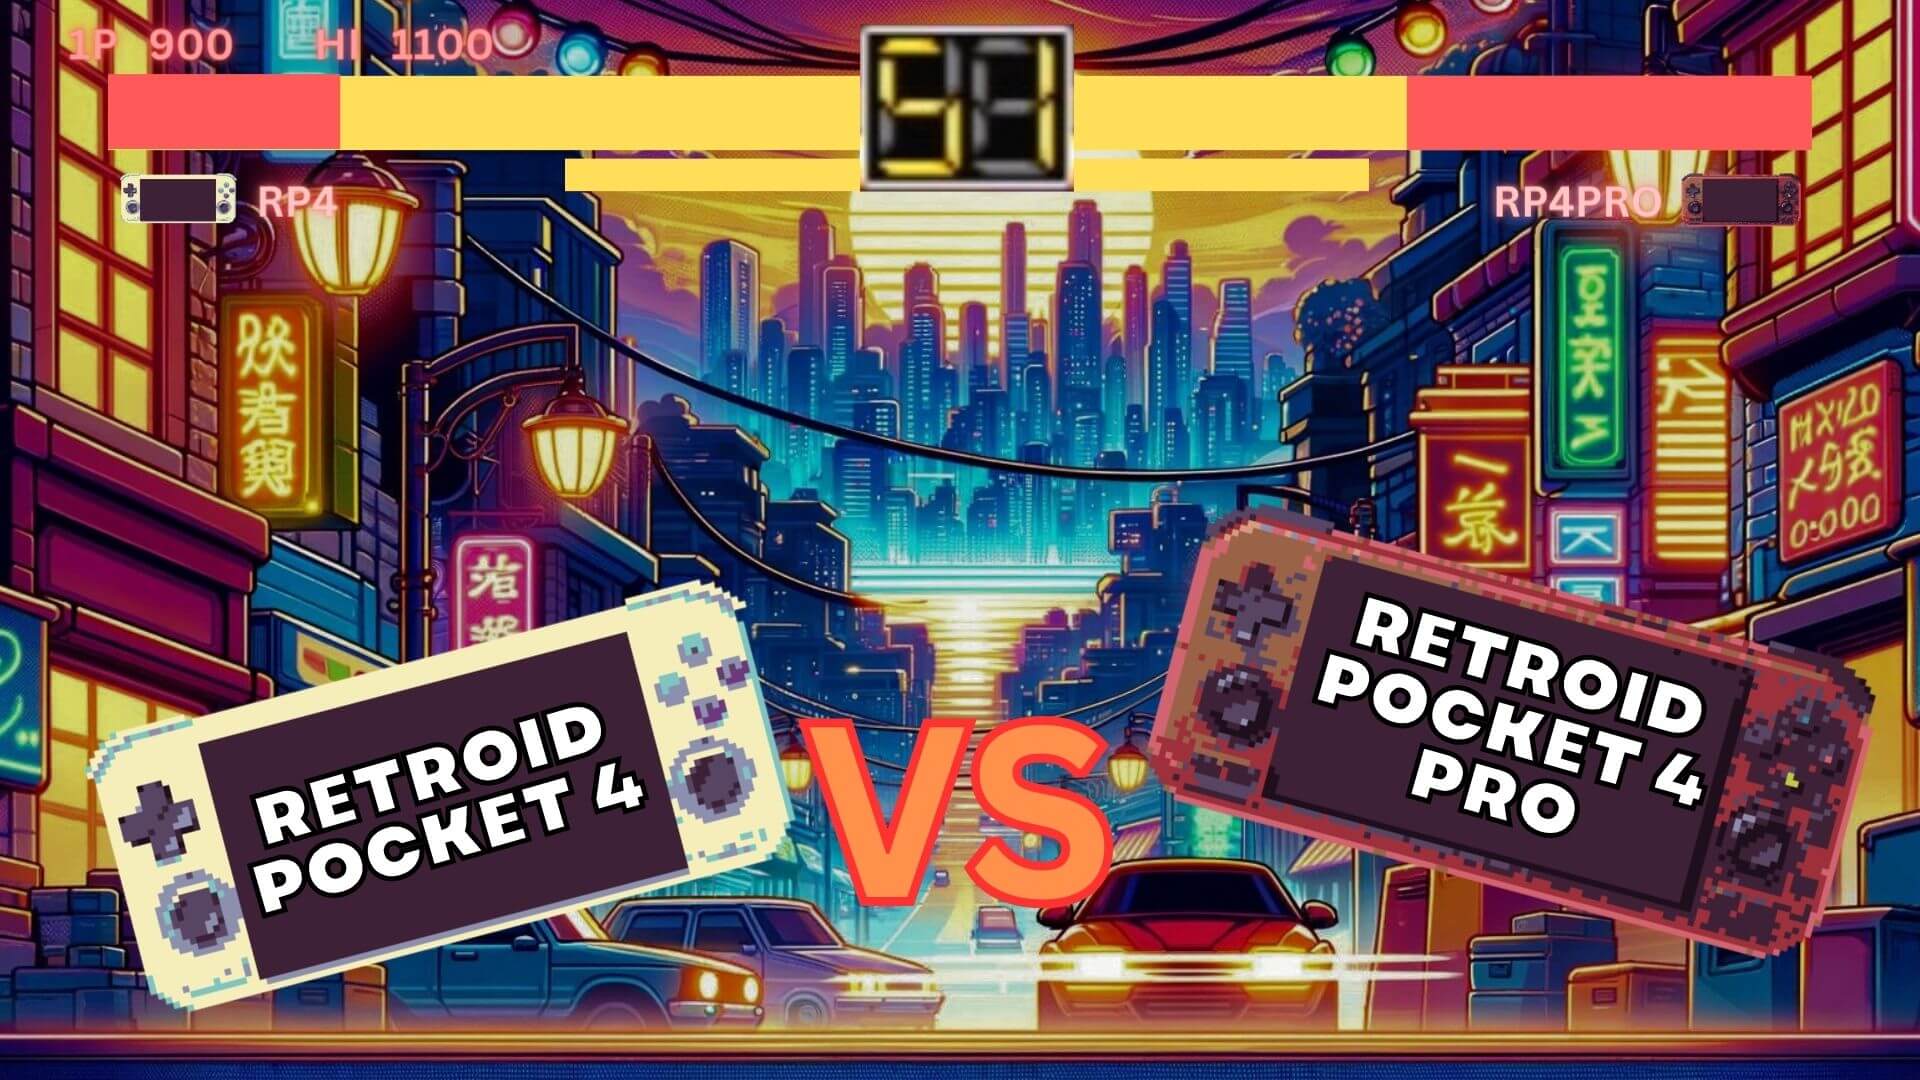 Retroid Pocket 4 vs. Retroid Pocket  4 PRO mit Video - Welches ist das beste Preis-/Leistungsverhältnis?